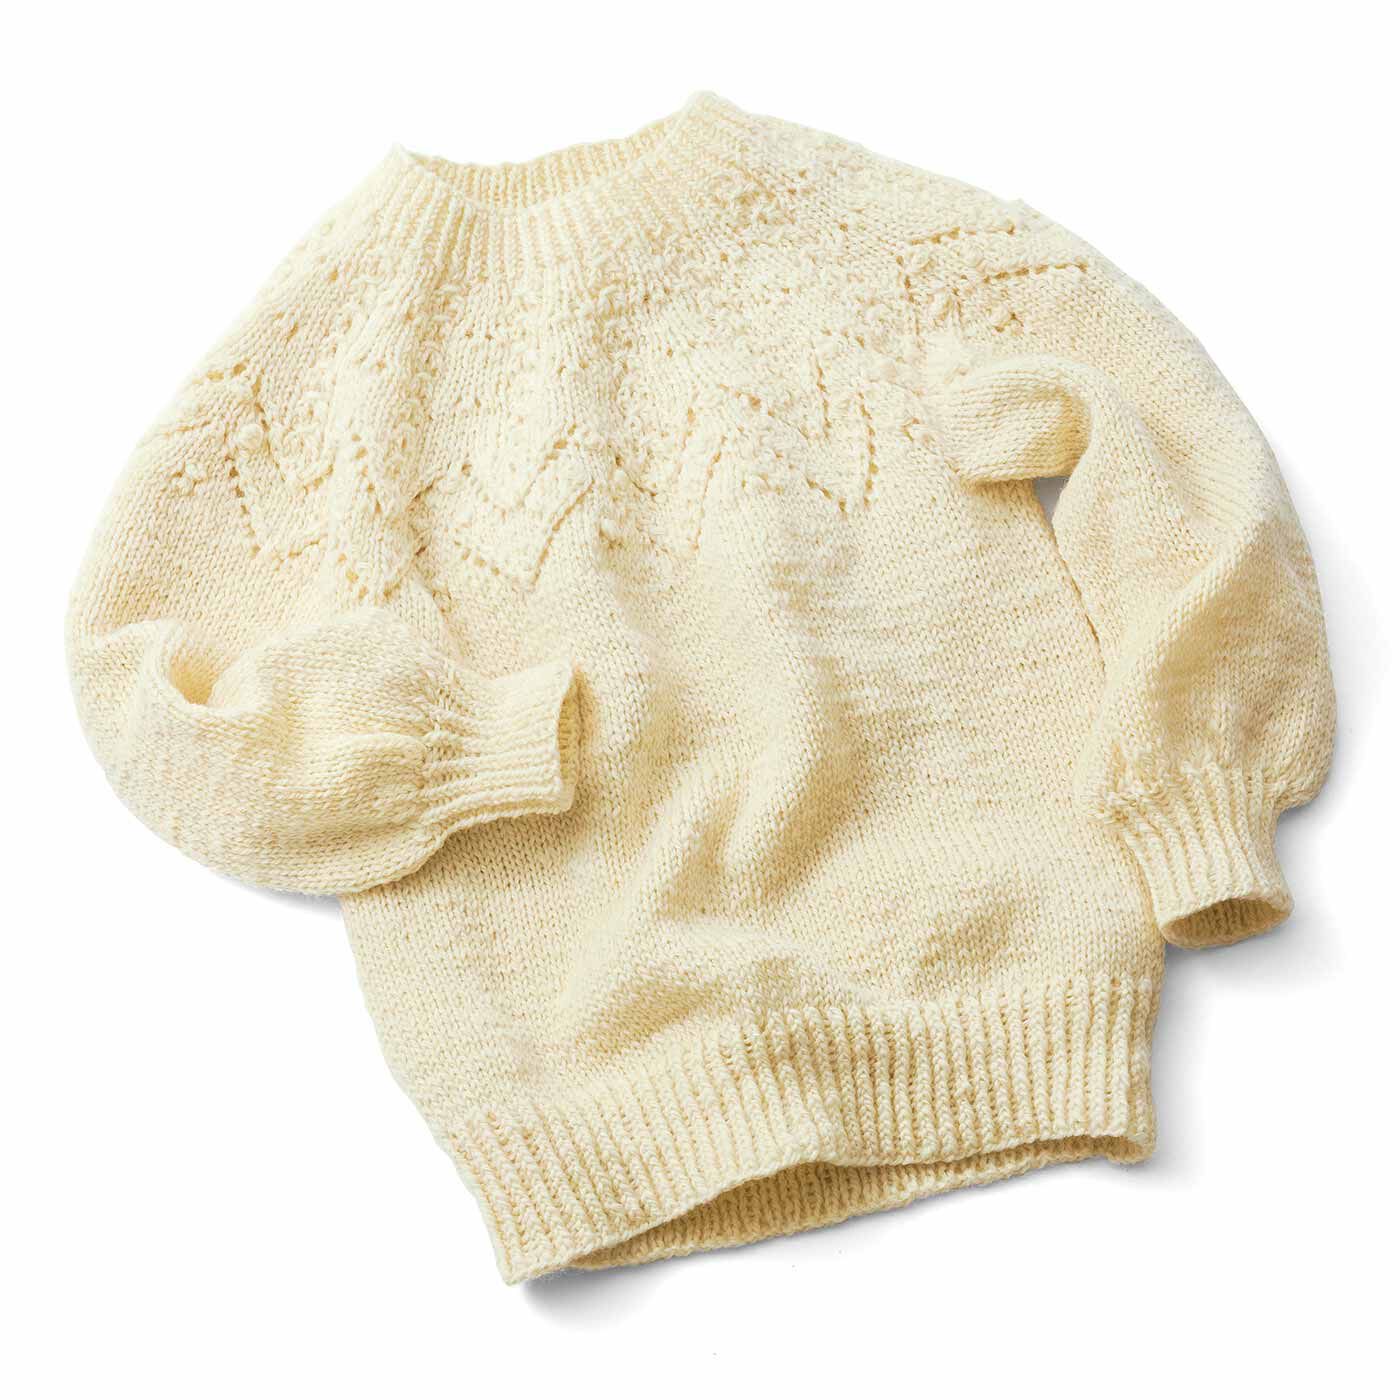 クチュリエ|今こそチャレンジ 輪針で編める 手編みのセーター〈ラベンダーグレー〉|●色は一例です。